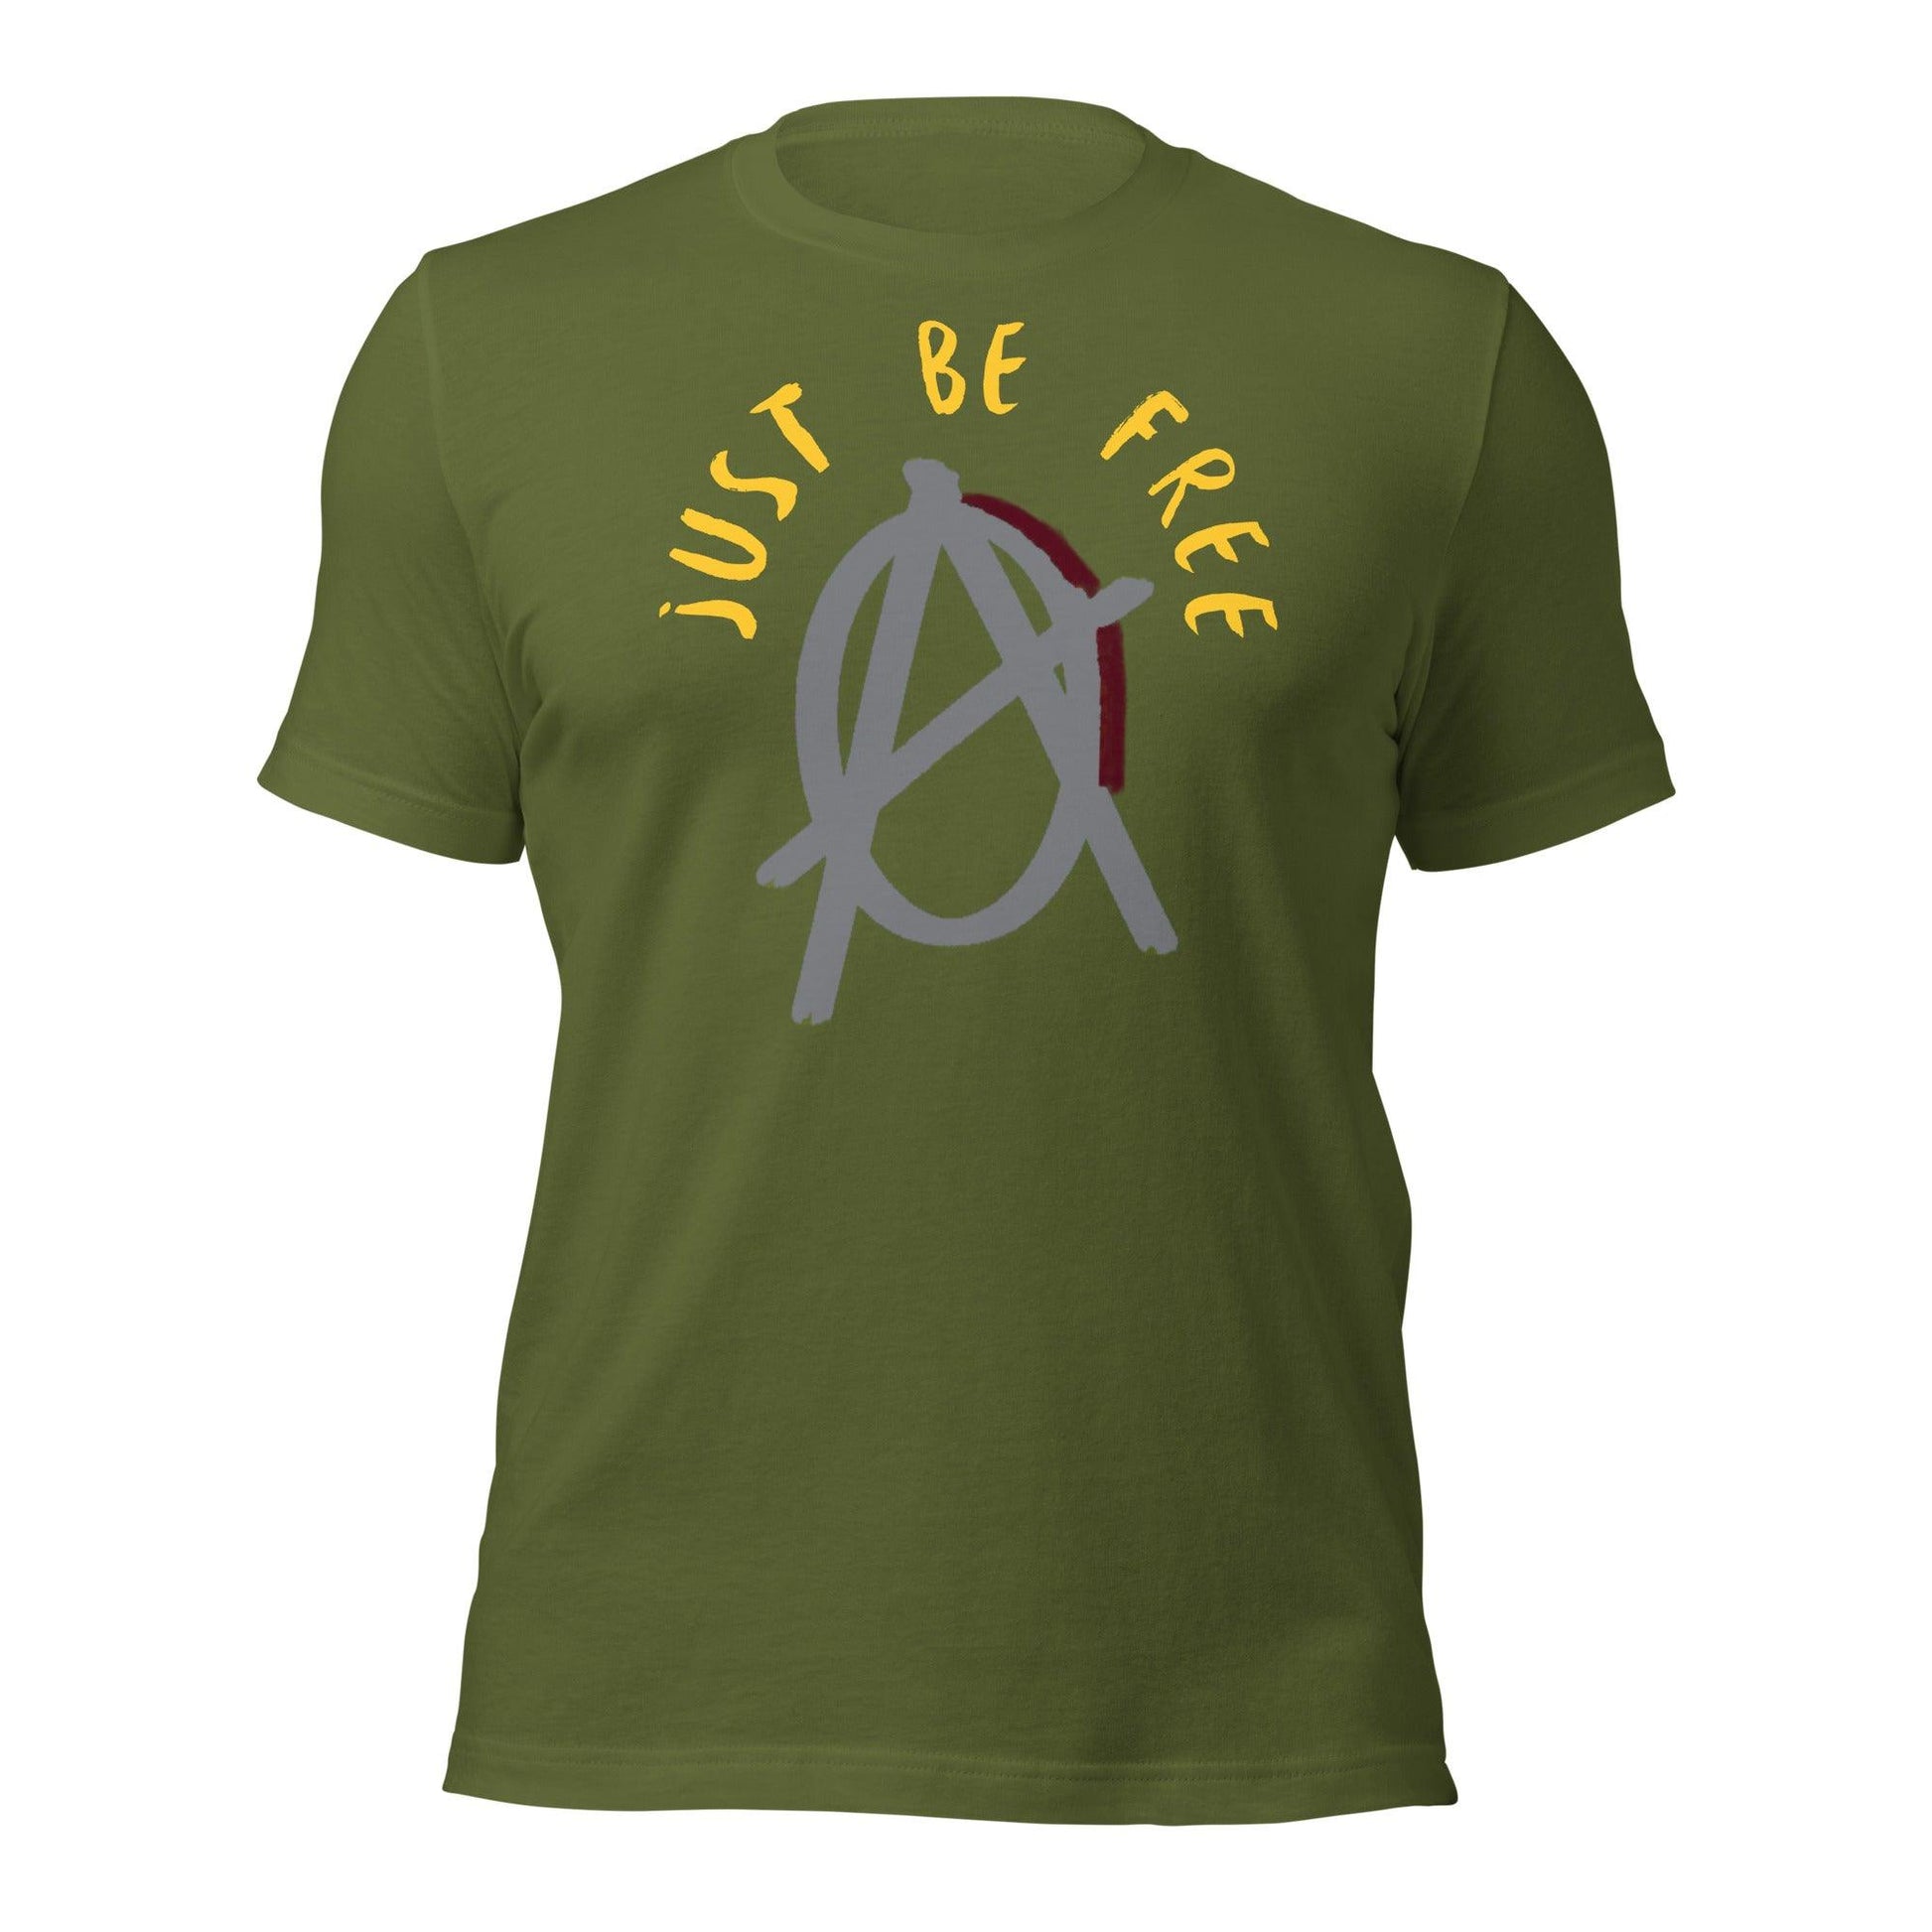 Anarchy Wear "Just Be Free" Agora Grey Unisex t-shirt - AnarchyWear